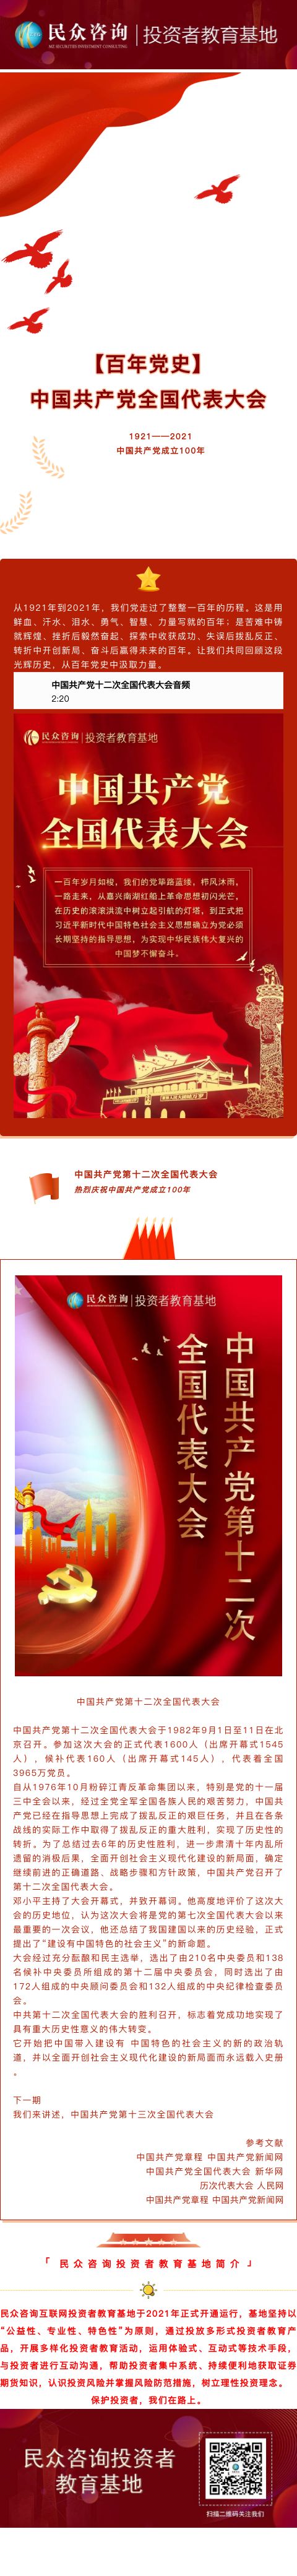 【百年党史】中国共产党第十二次全国代表大会.jpg